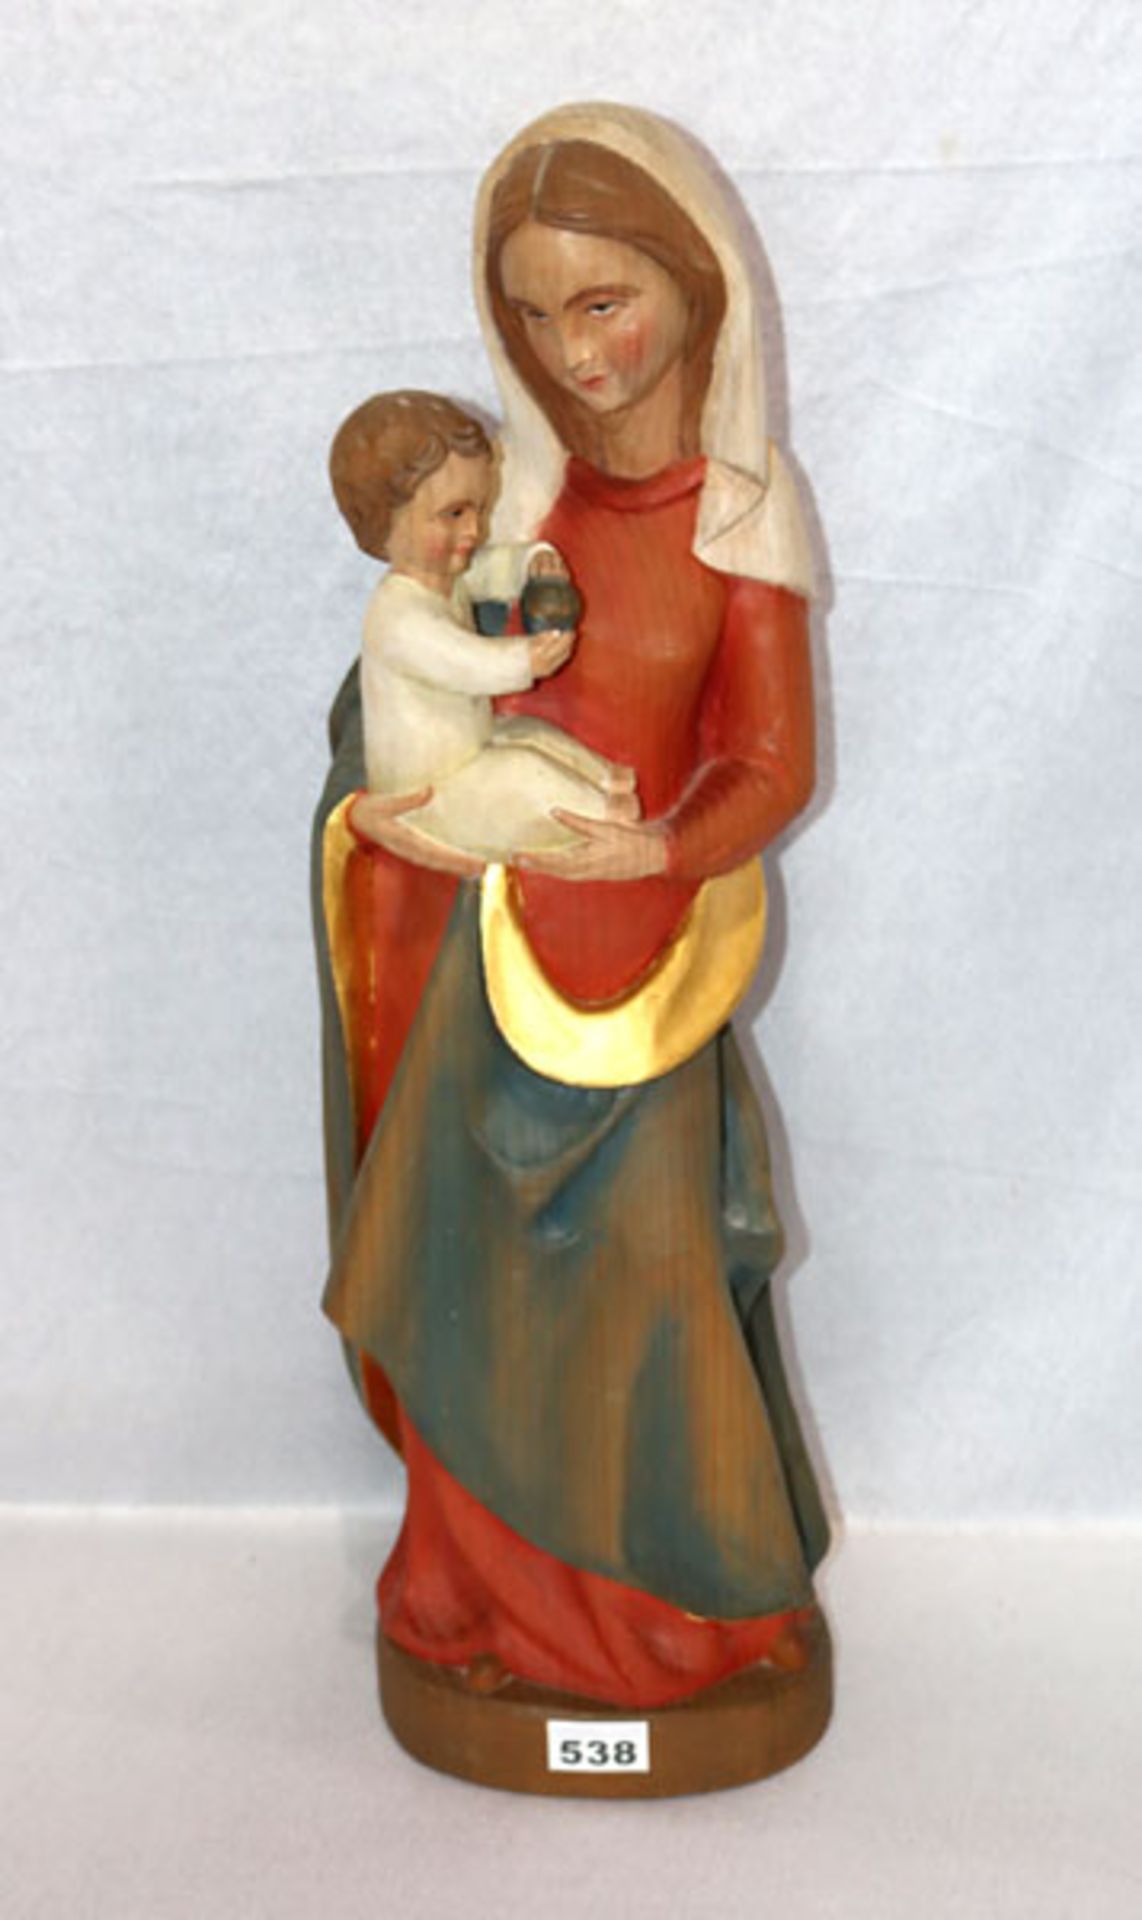 Holz Figurenskulptur 'Maria mit Kind', farbig gefaßt, H 63 cm